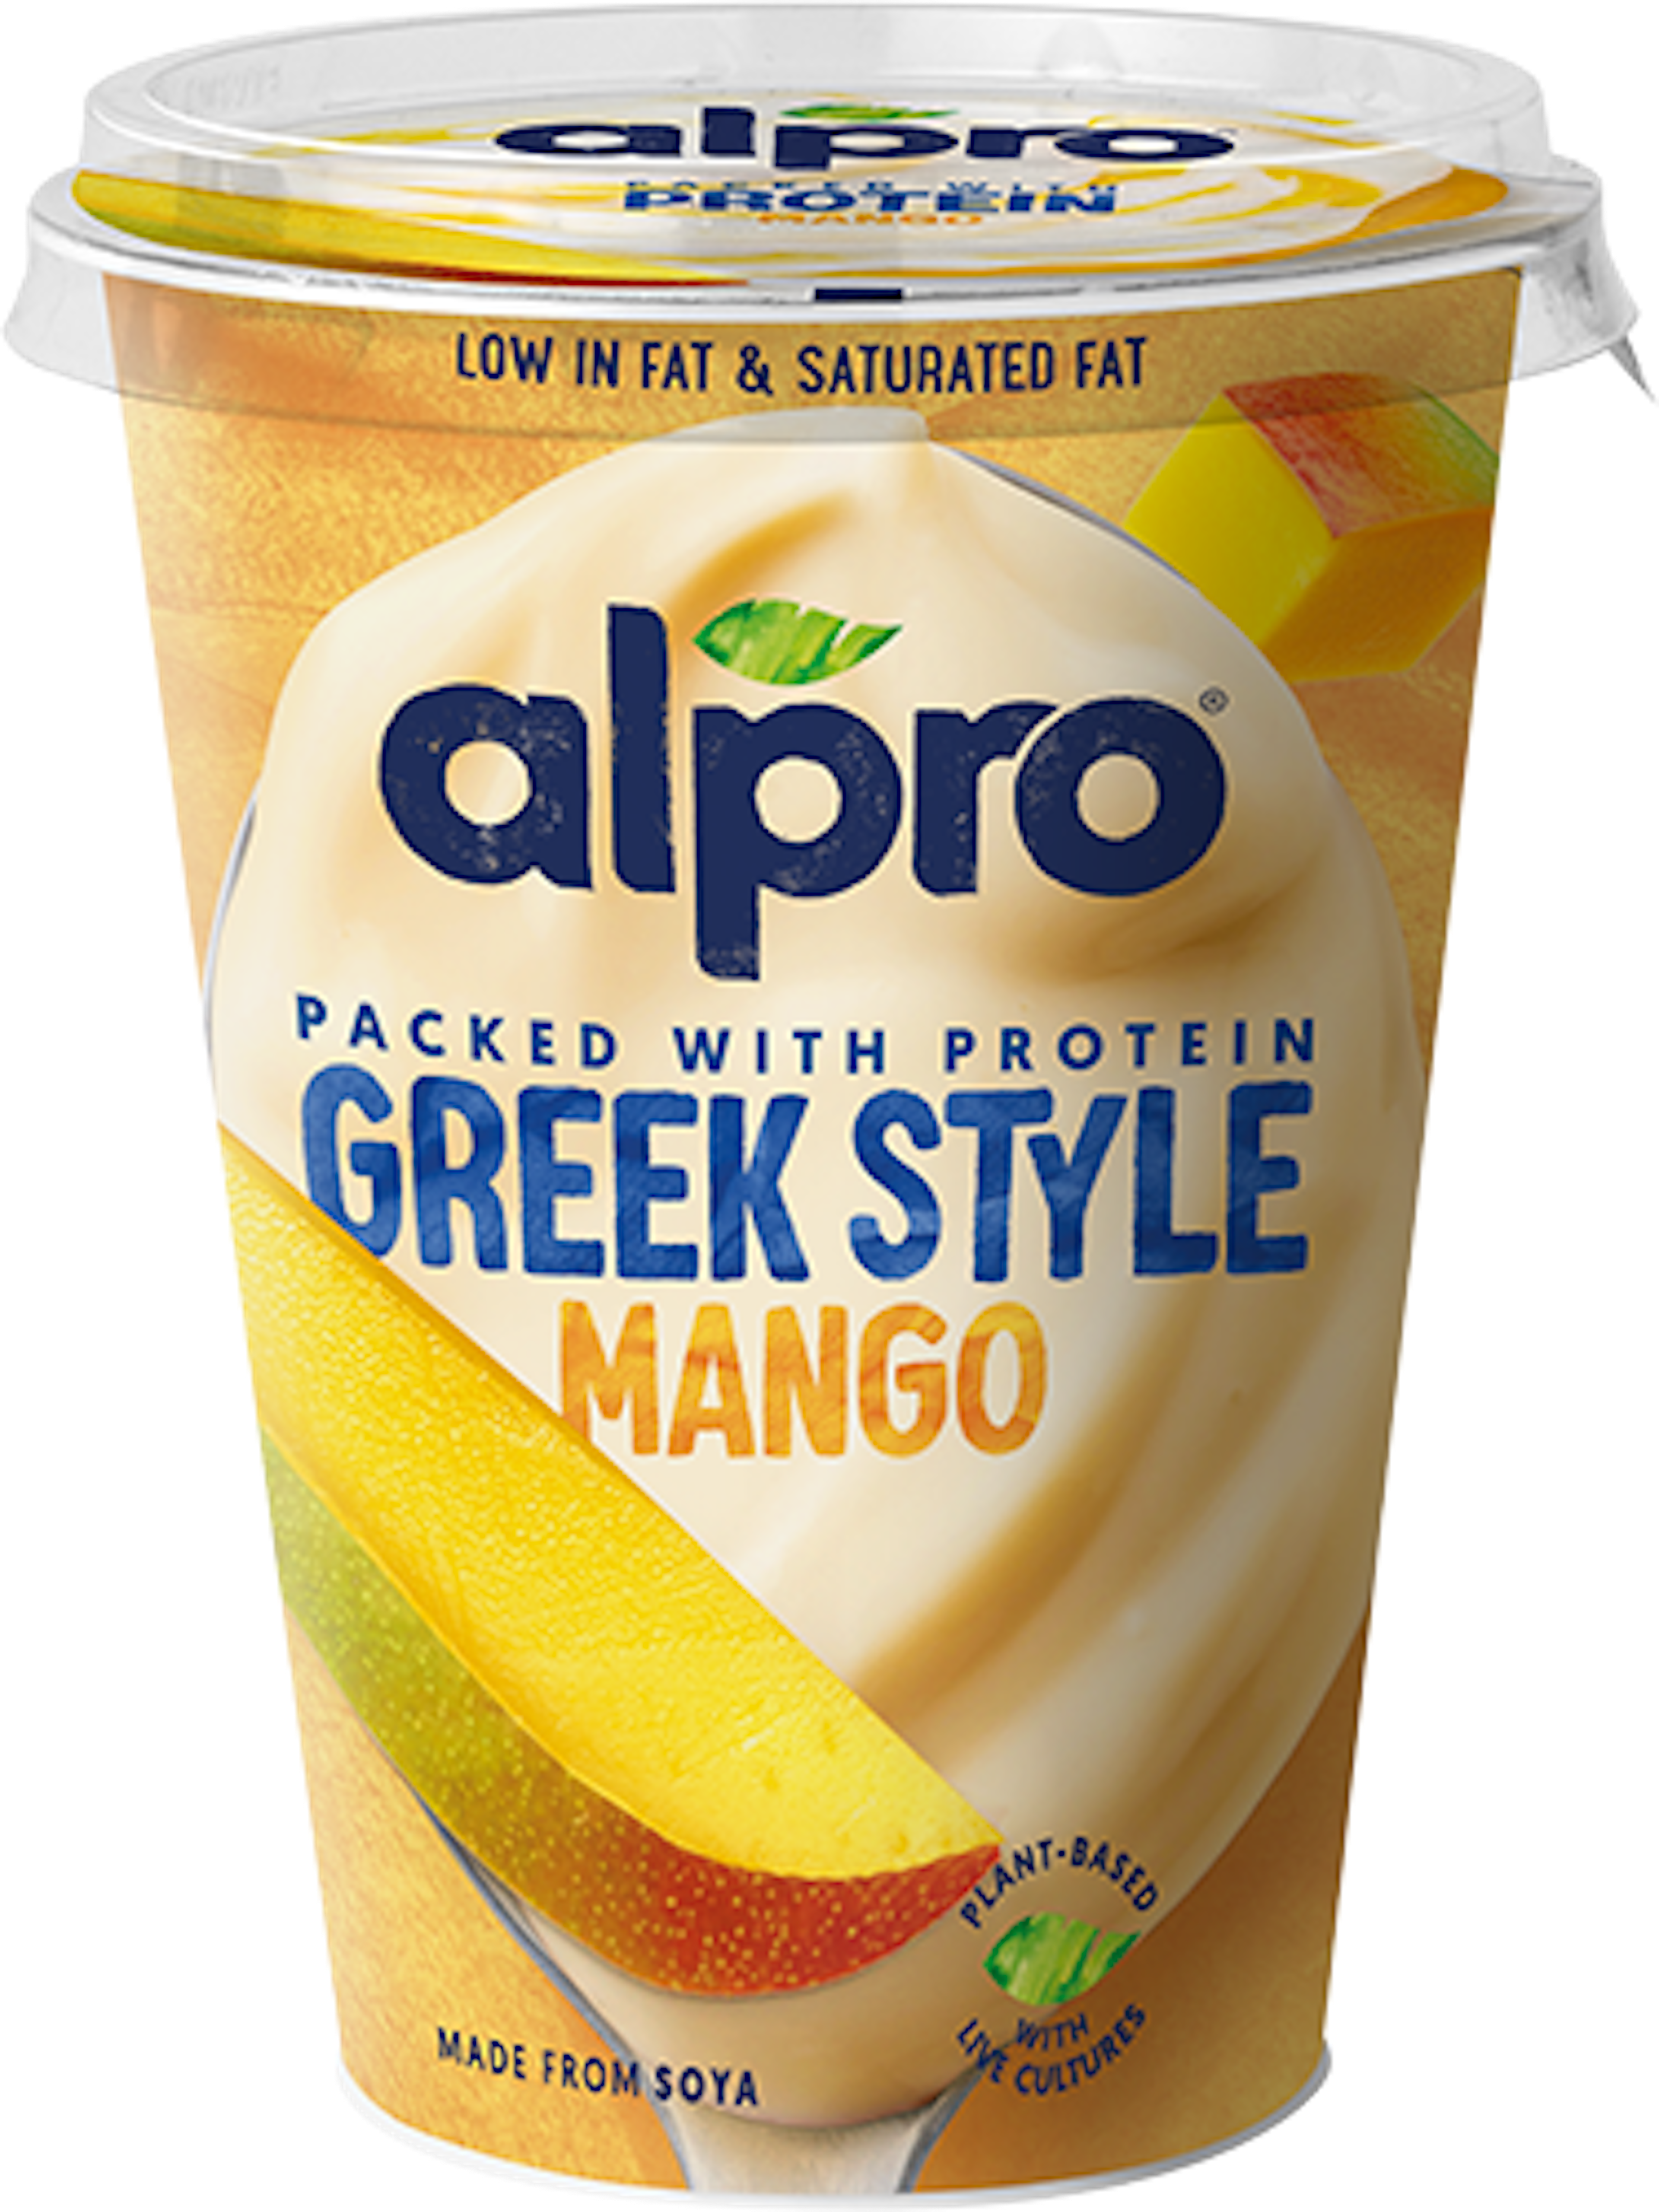 Kreeka stiilis, mango maitsega